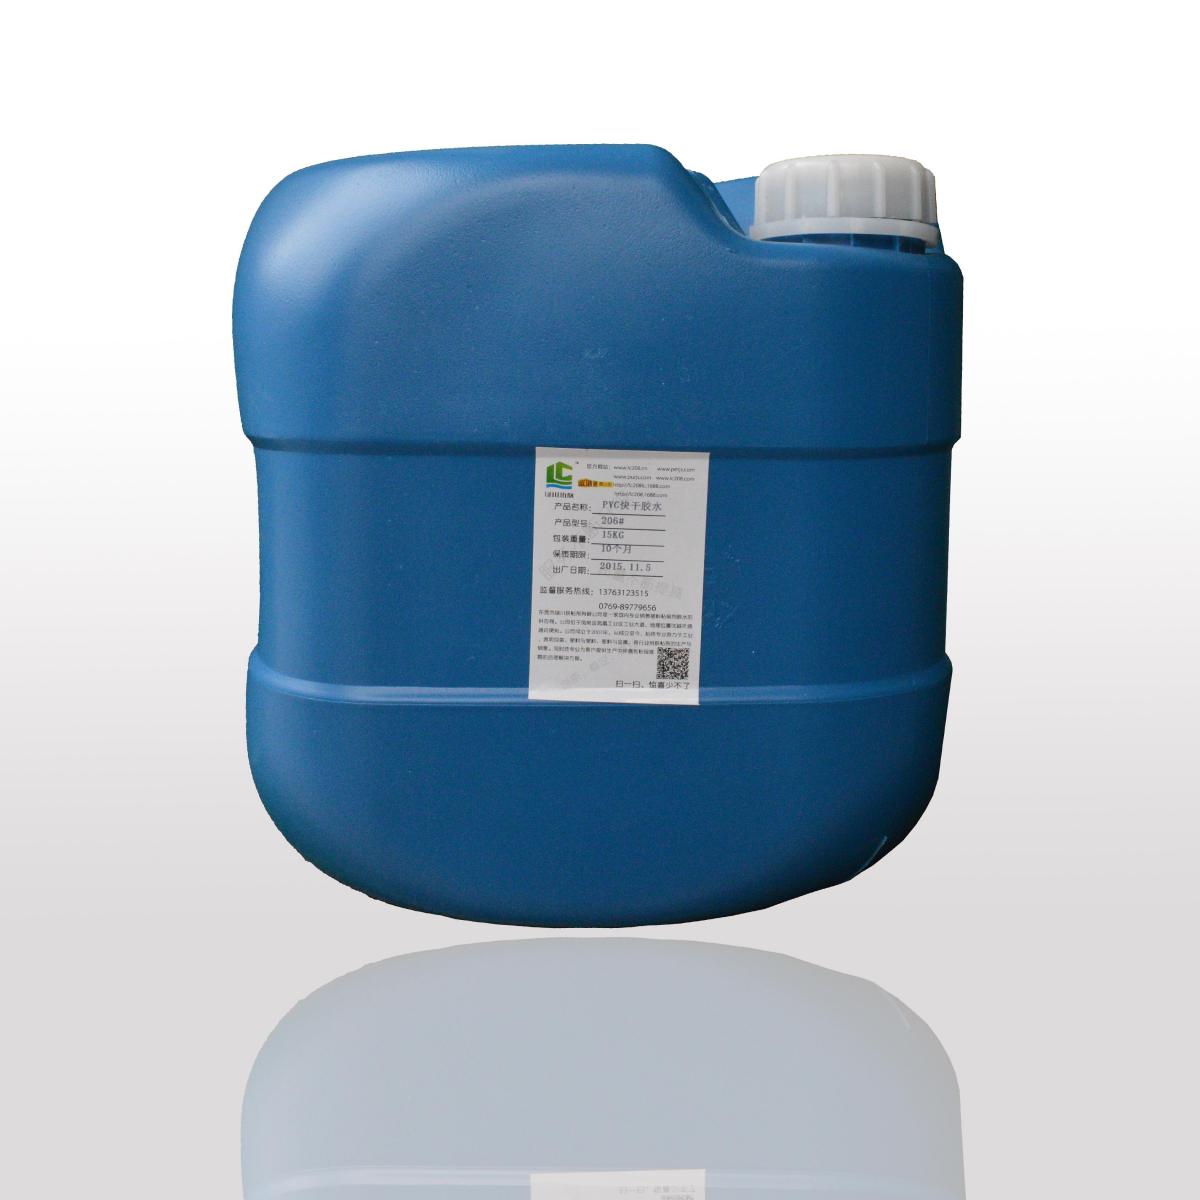 低气味PVC胶水与普通PVC胶水的区别